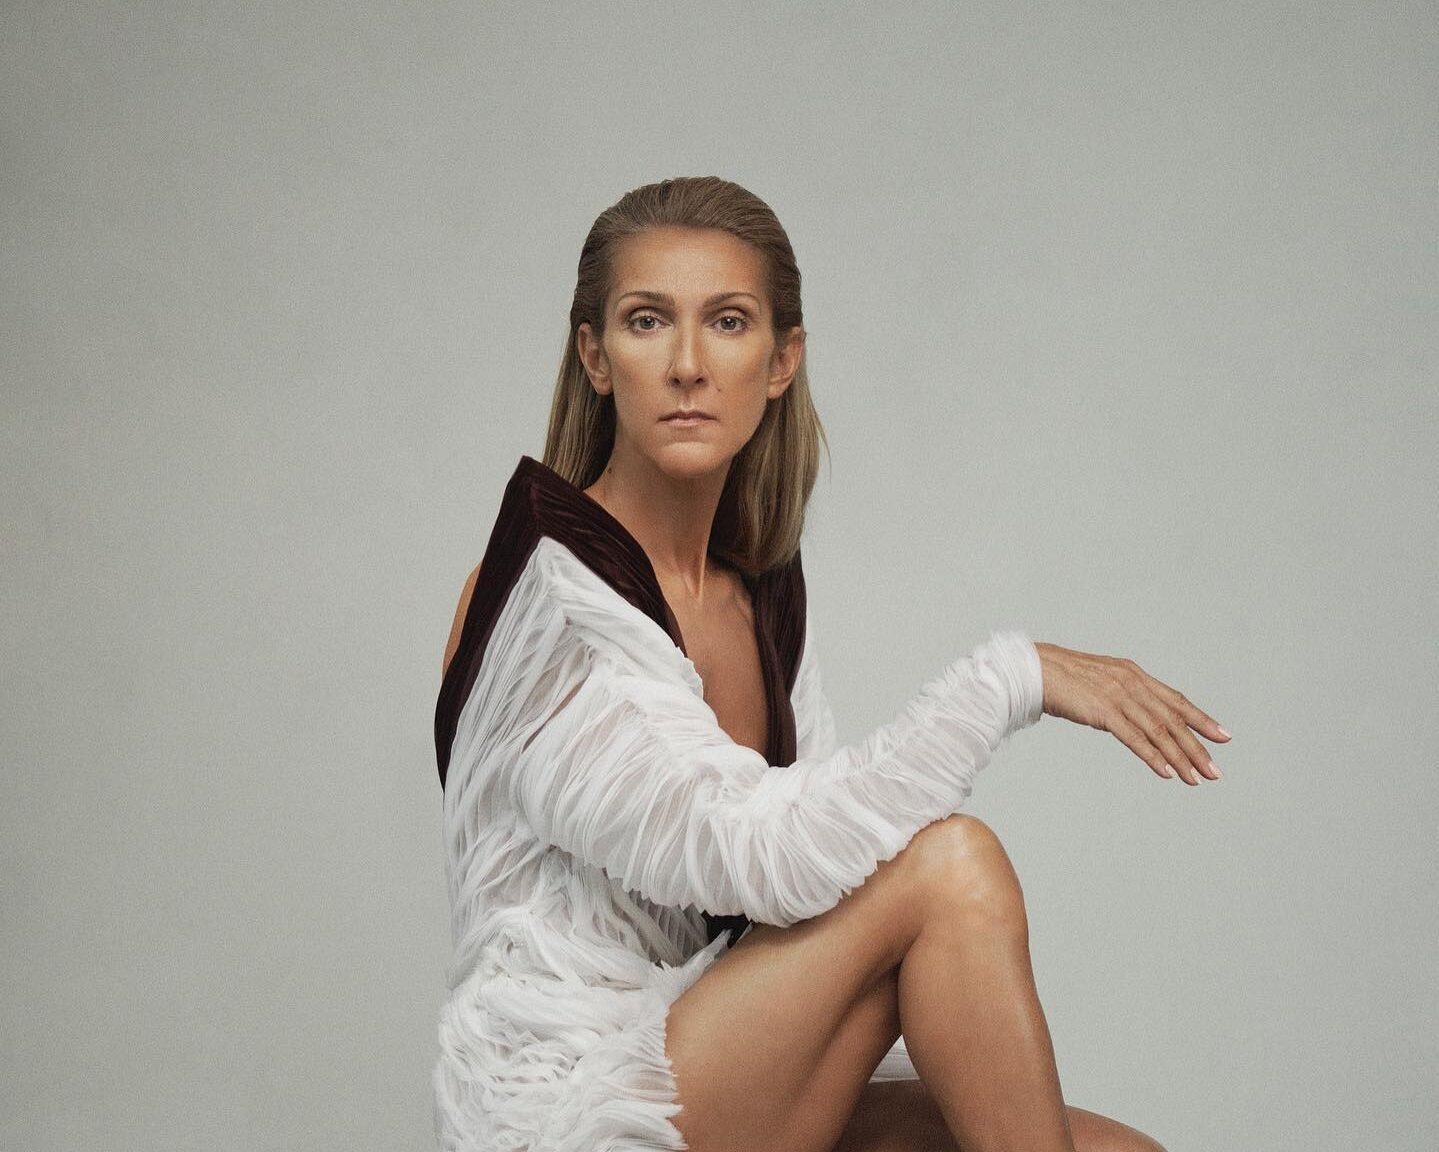 Η Celine Dion έχασε τον έλεγχο των μυών της λόγω του συνδρόμου δύσκαμπτου ατόμου που αντιμετωπίζει